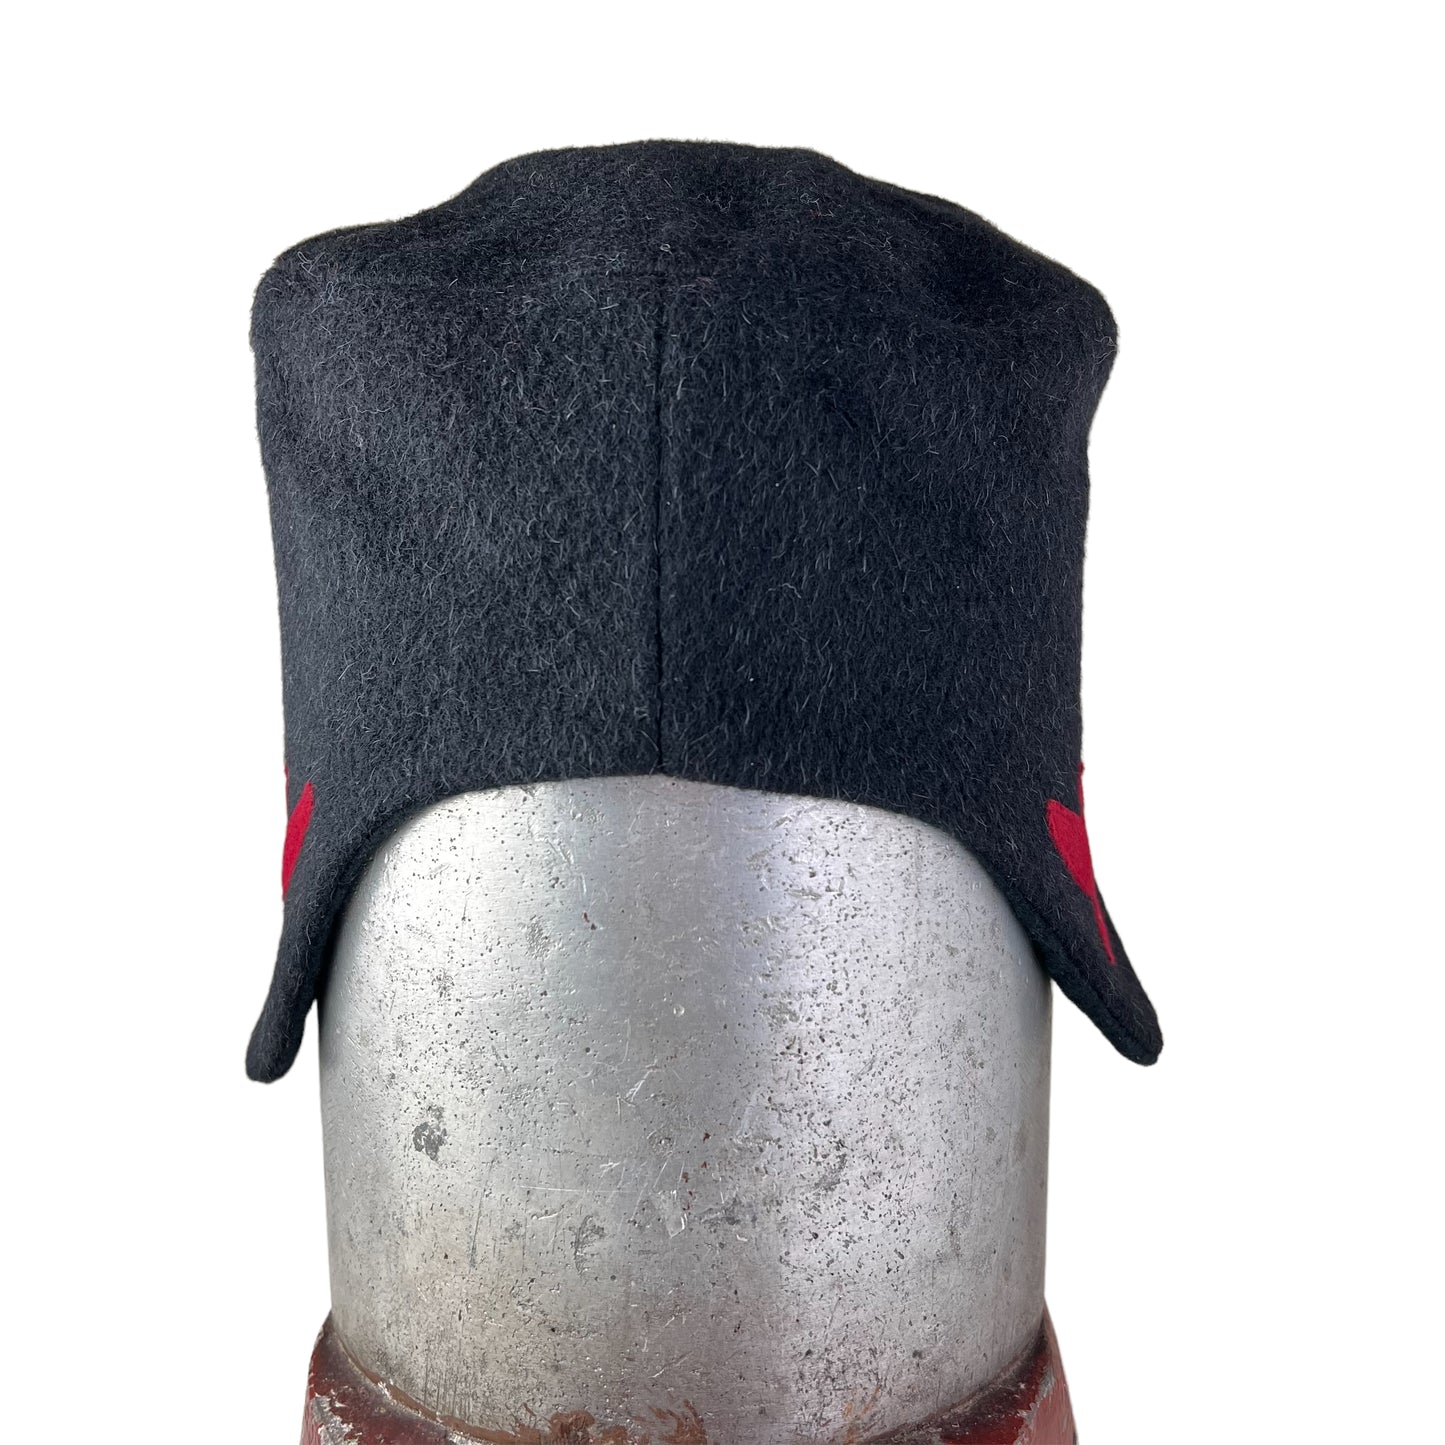 Amelia Wool Ear Flap Womens Helmet Hat X Large Black Red